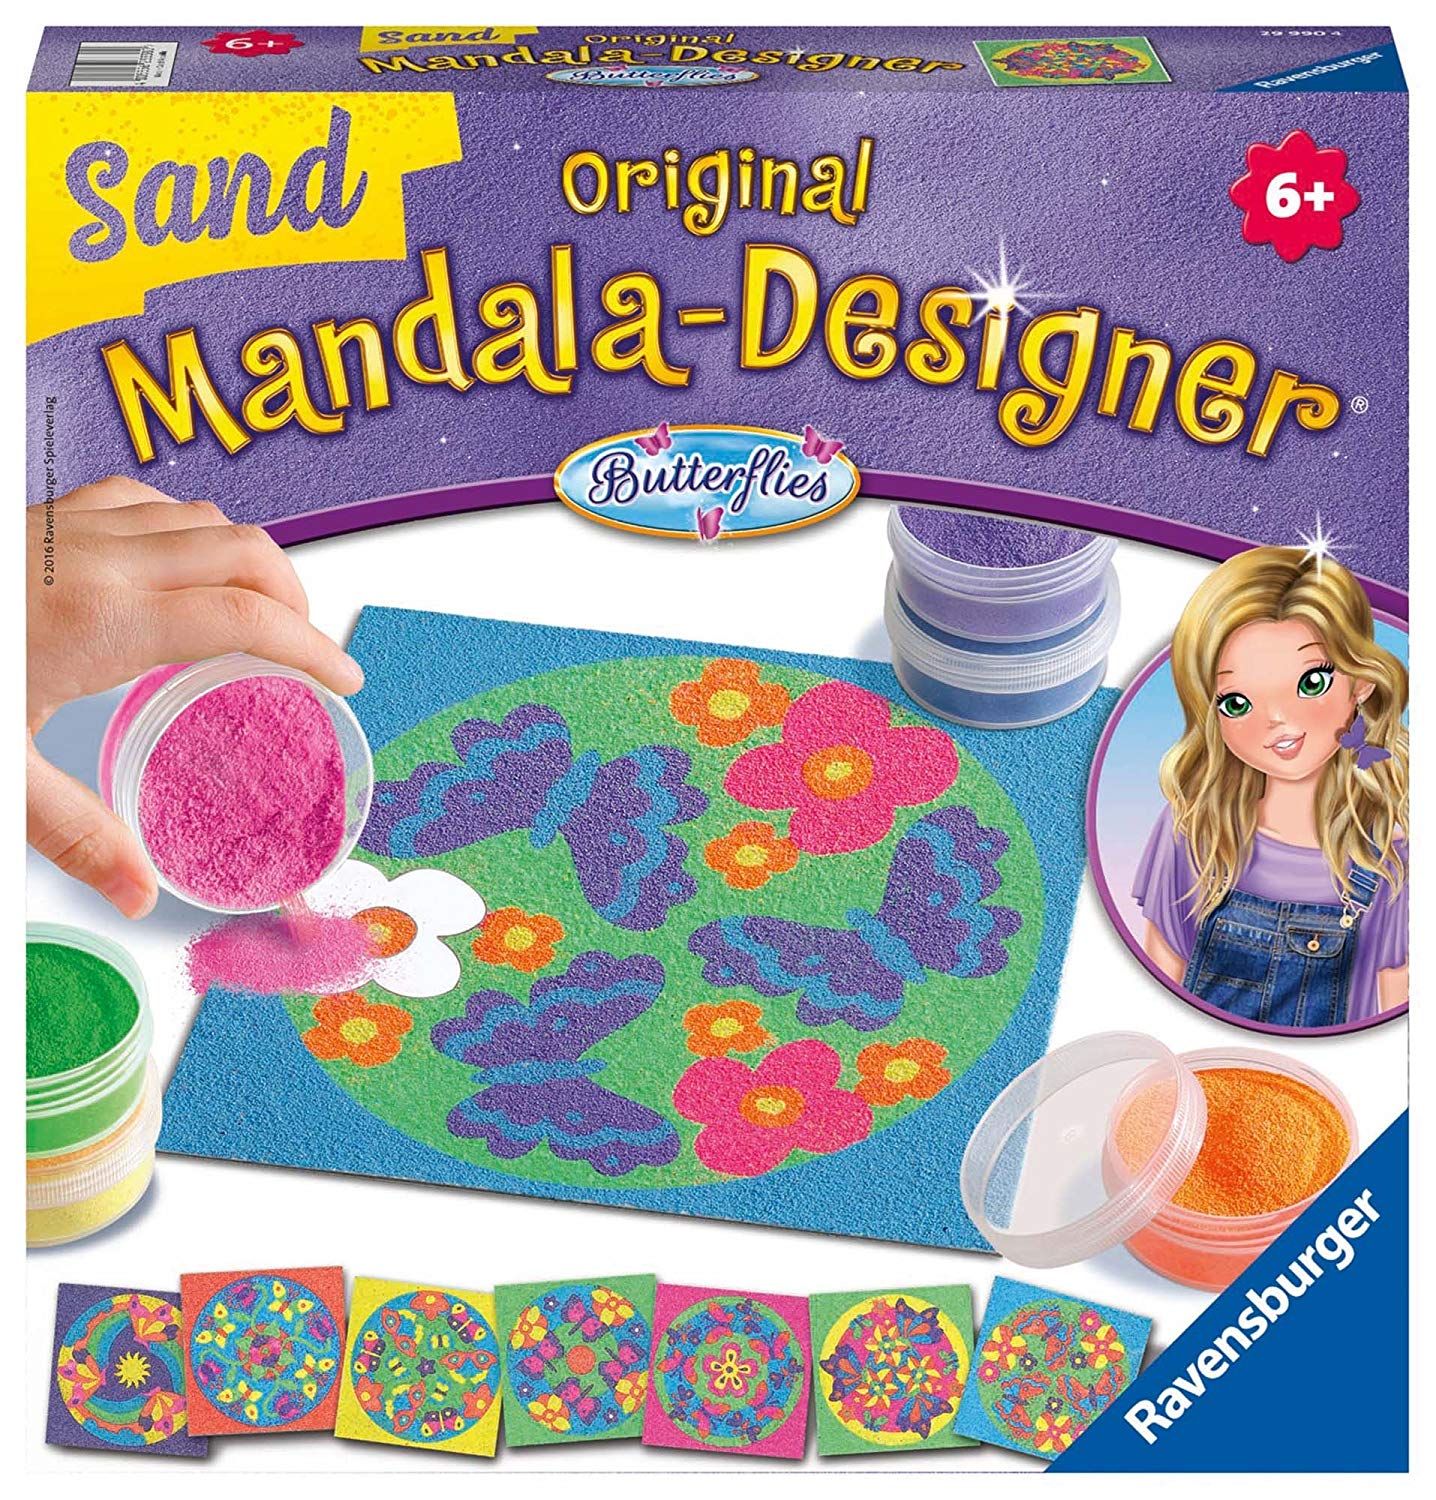 met de mandala sjablonen en het gekleurde zand ontstaan na en naar prachtige zand mandala's. Eenvoudig de zelfklevende folie op de gewenste plaats verwijderen en het zand strooien. 